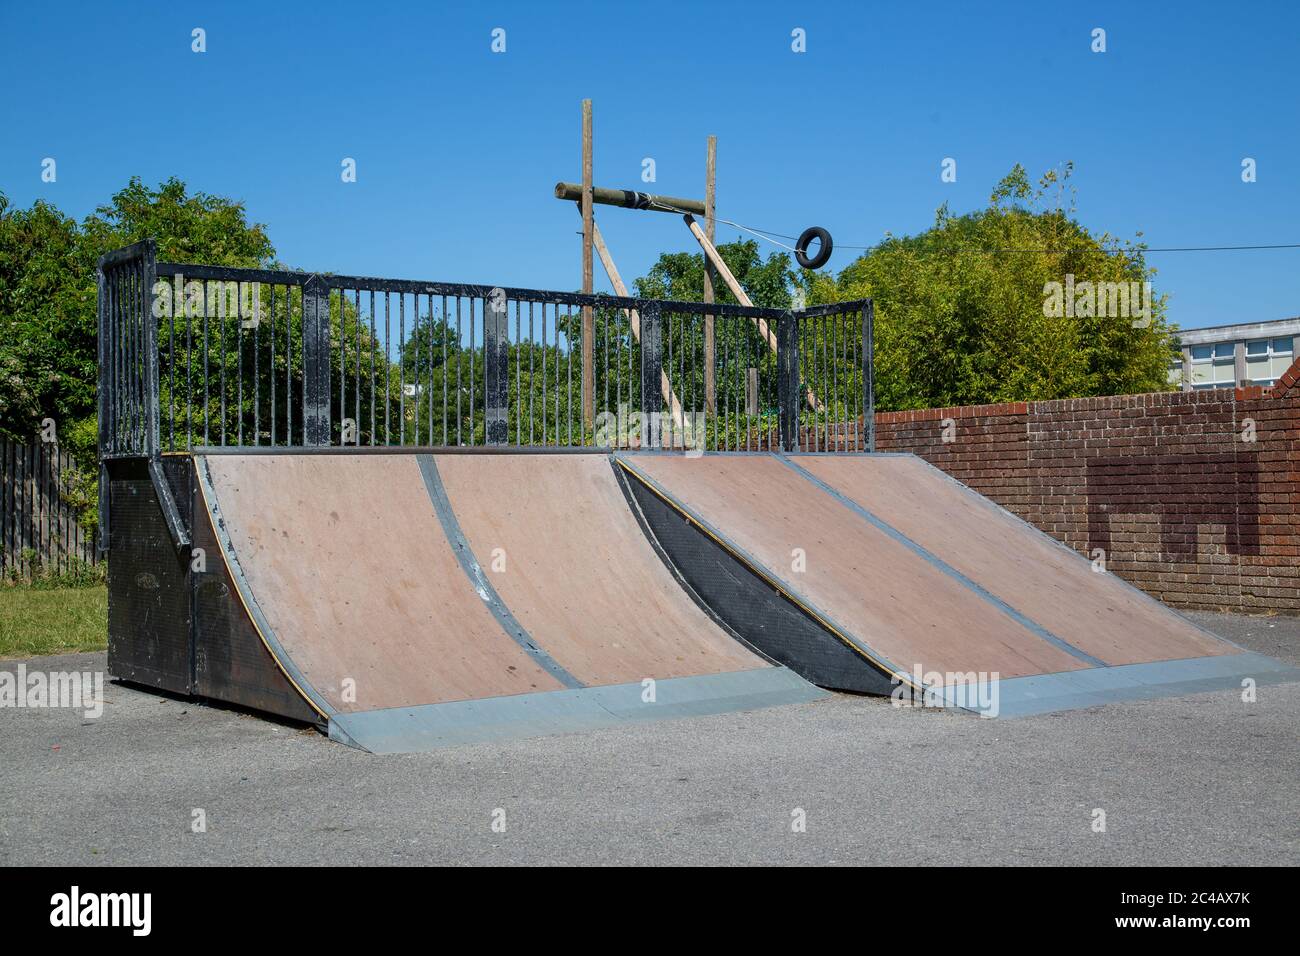 Skaterampen in einem lokalen Park für Skateboarding ohne Menschen, die sie verwenden Stockfoto